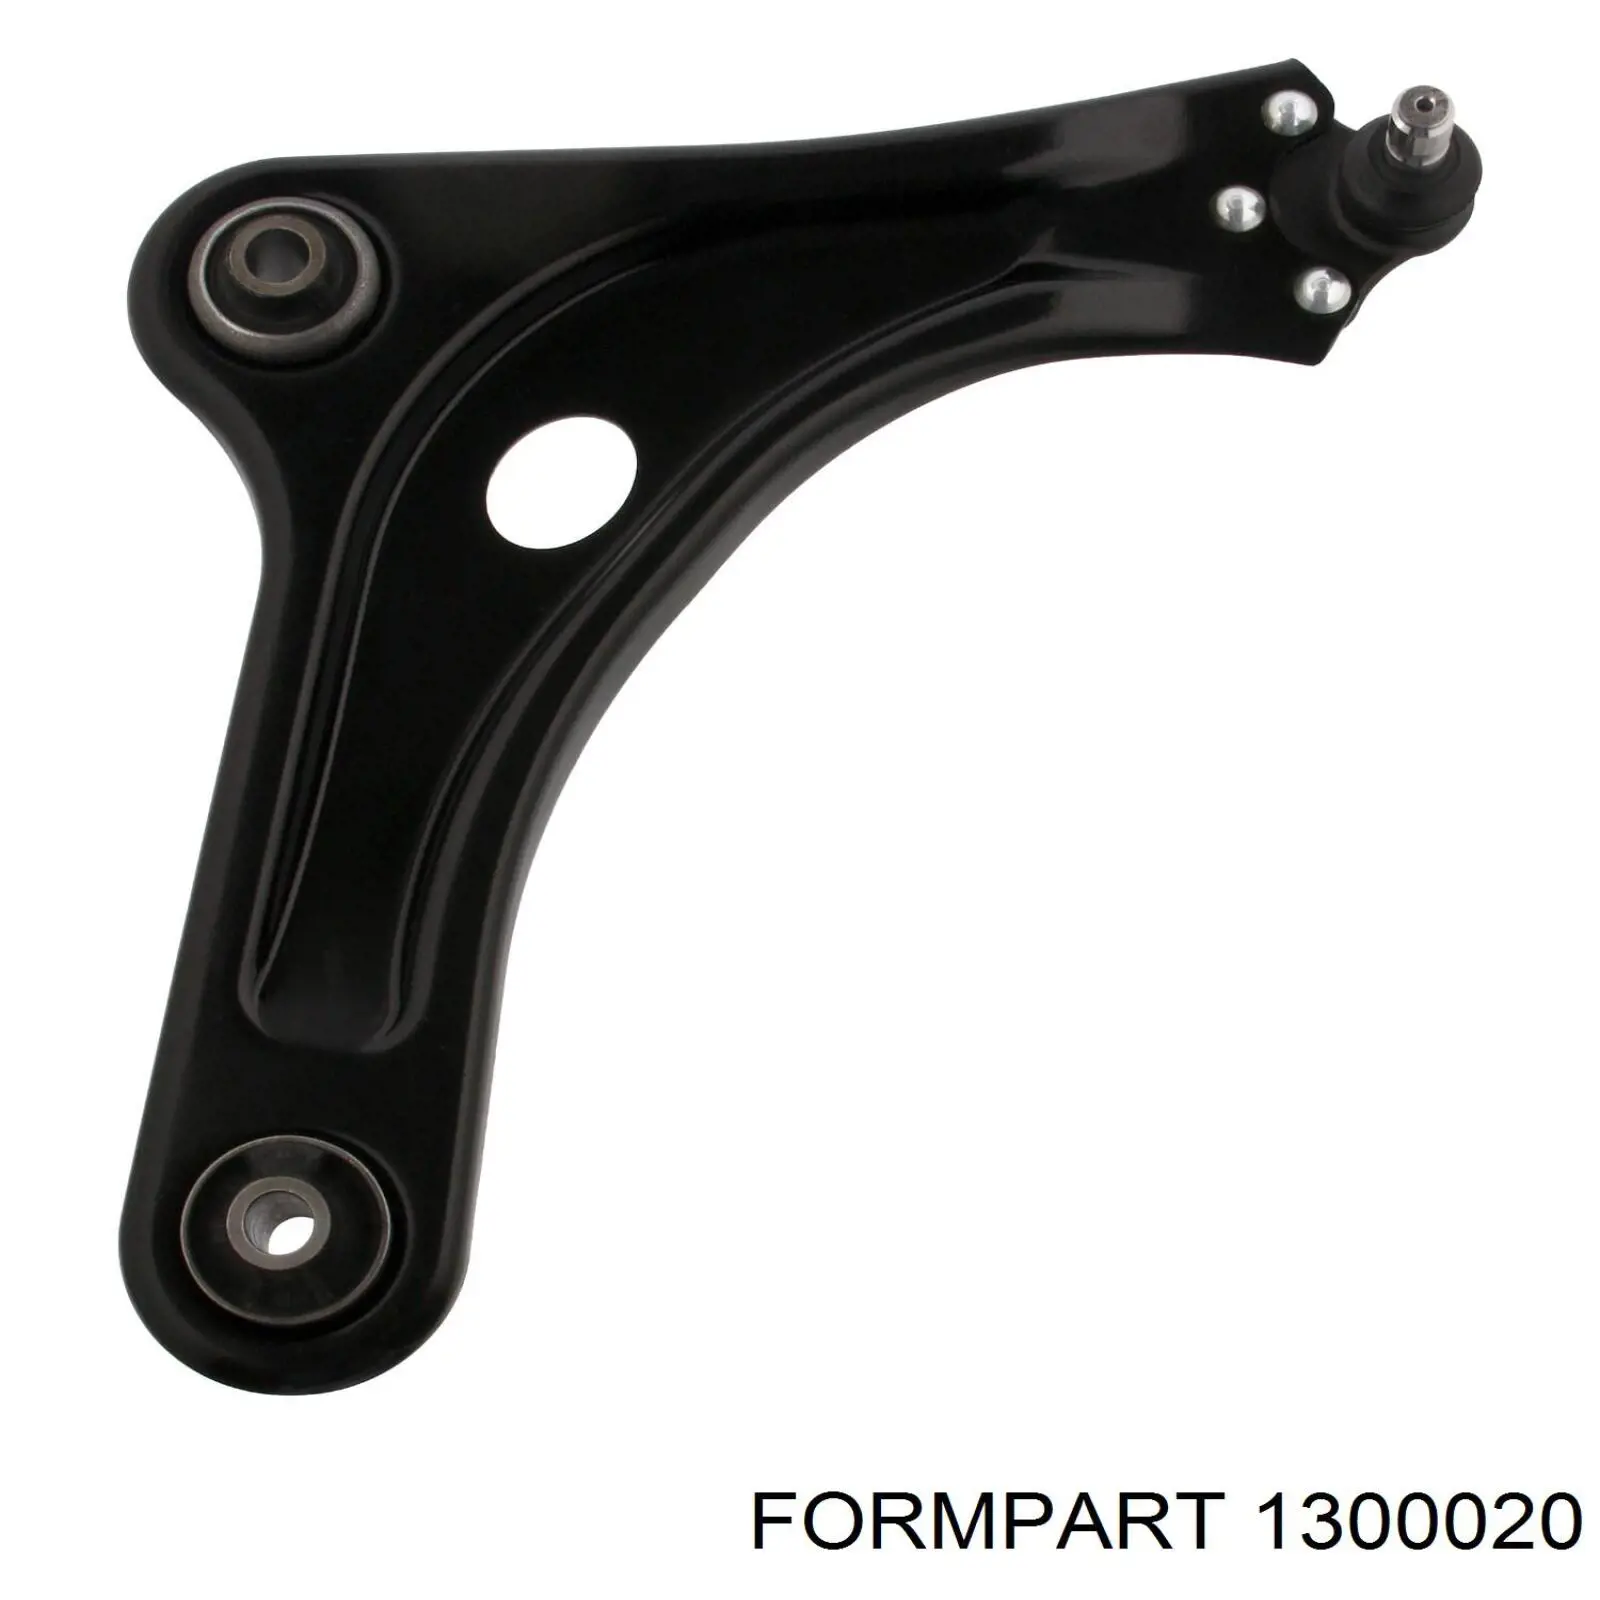 1300020 Formpart/Otoform silentblock de suspensión delantero inferior